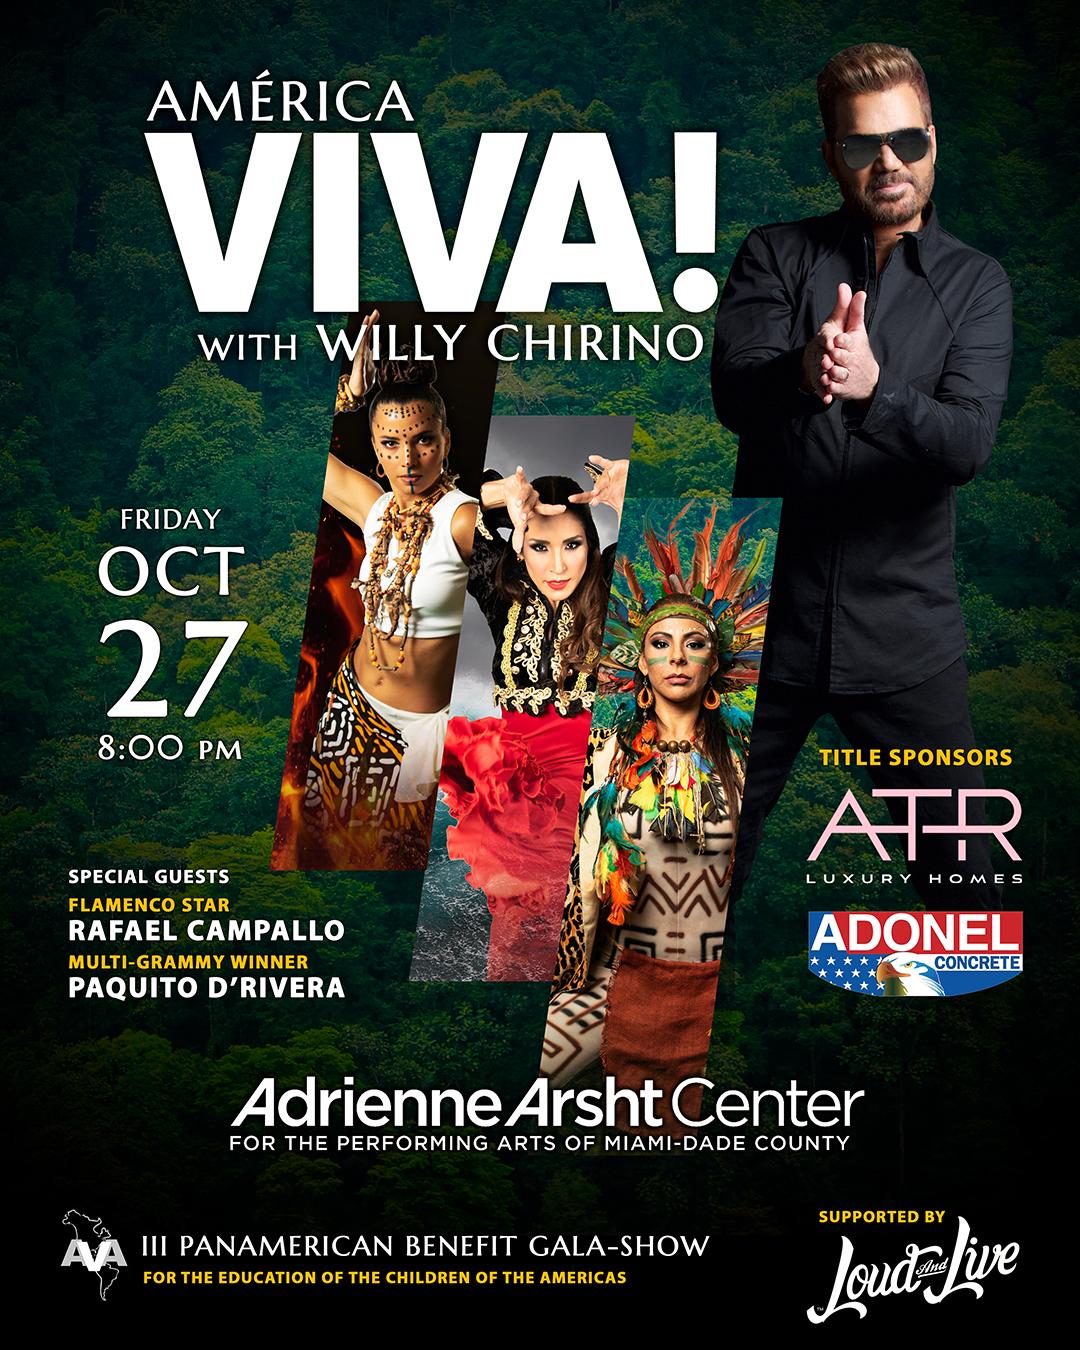 ÁMERICA VIVA! cuenta con invitado especial Willy Chirino en su tercera Gala Benéfica Panamericana